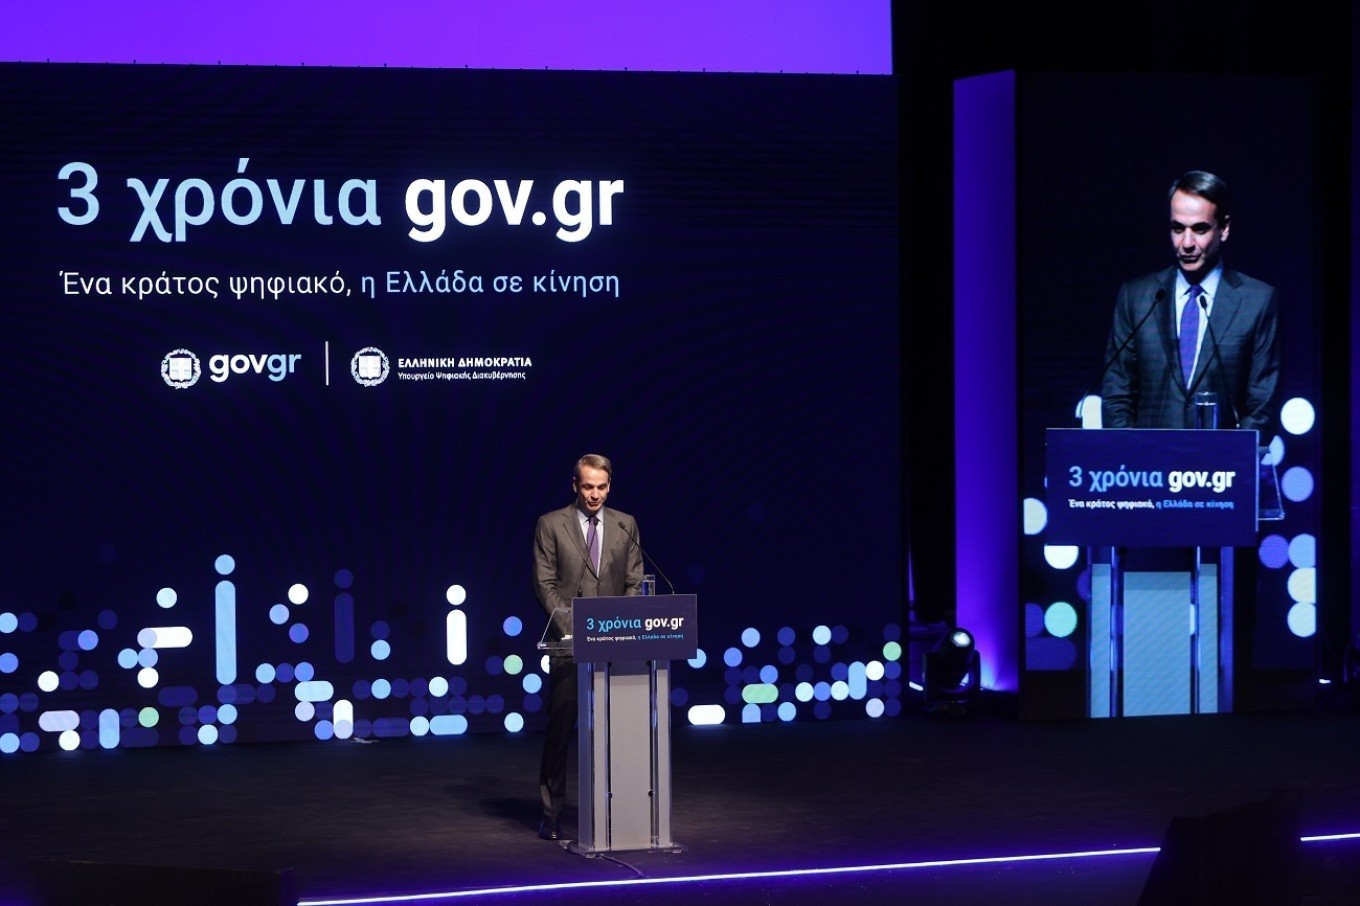 Μητσοτάκης για τα 3 χρόνια gov.gr: Γινόμαστε σοβαρό κράτος που σέβεται τον πολίτη (pics + vid) (upd)